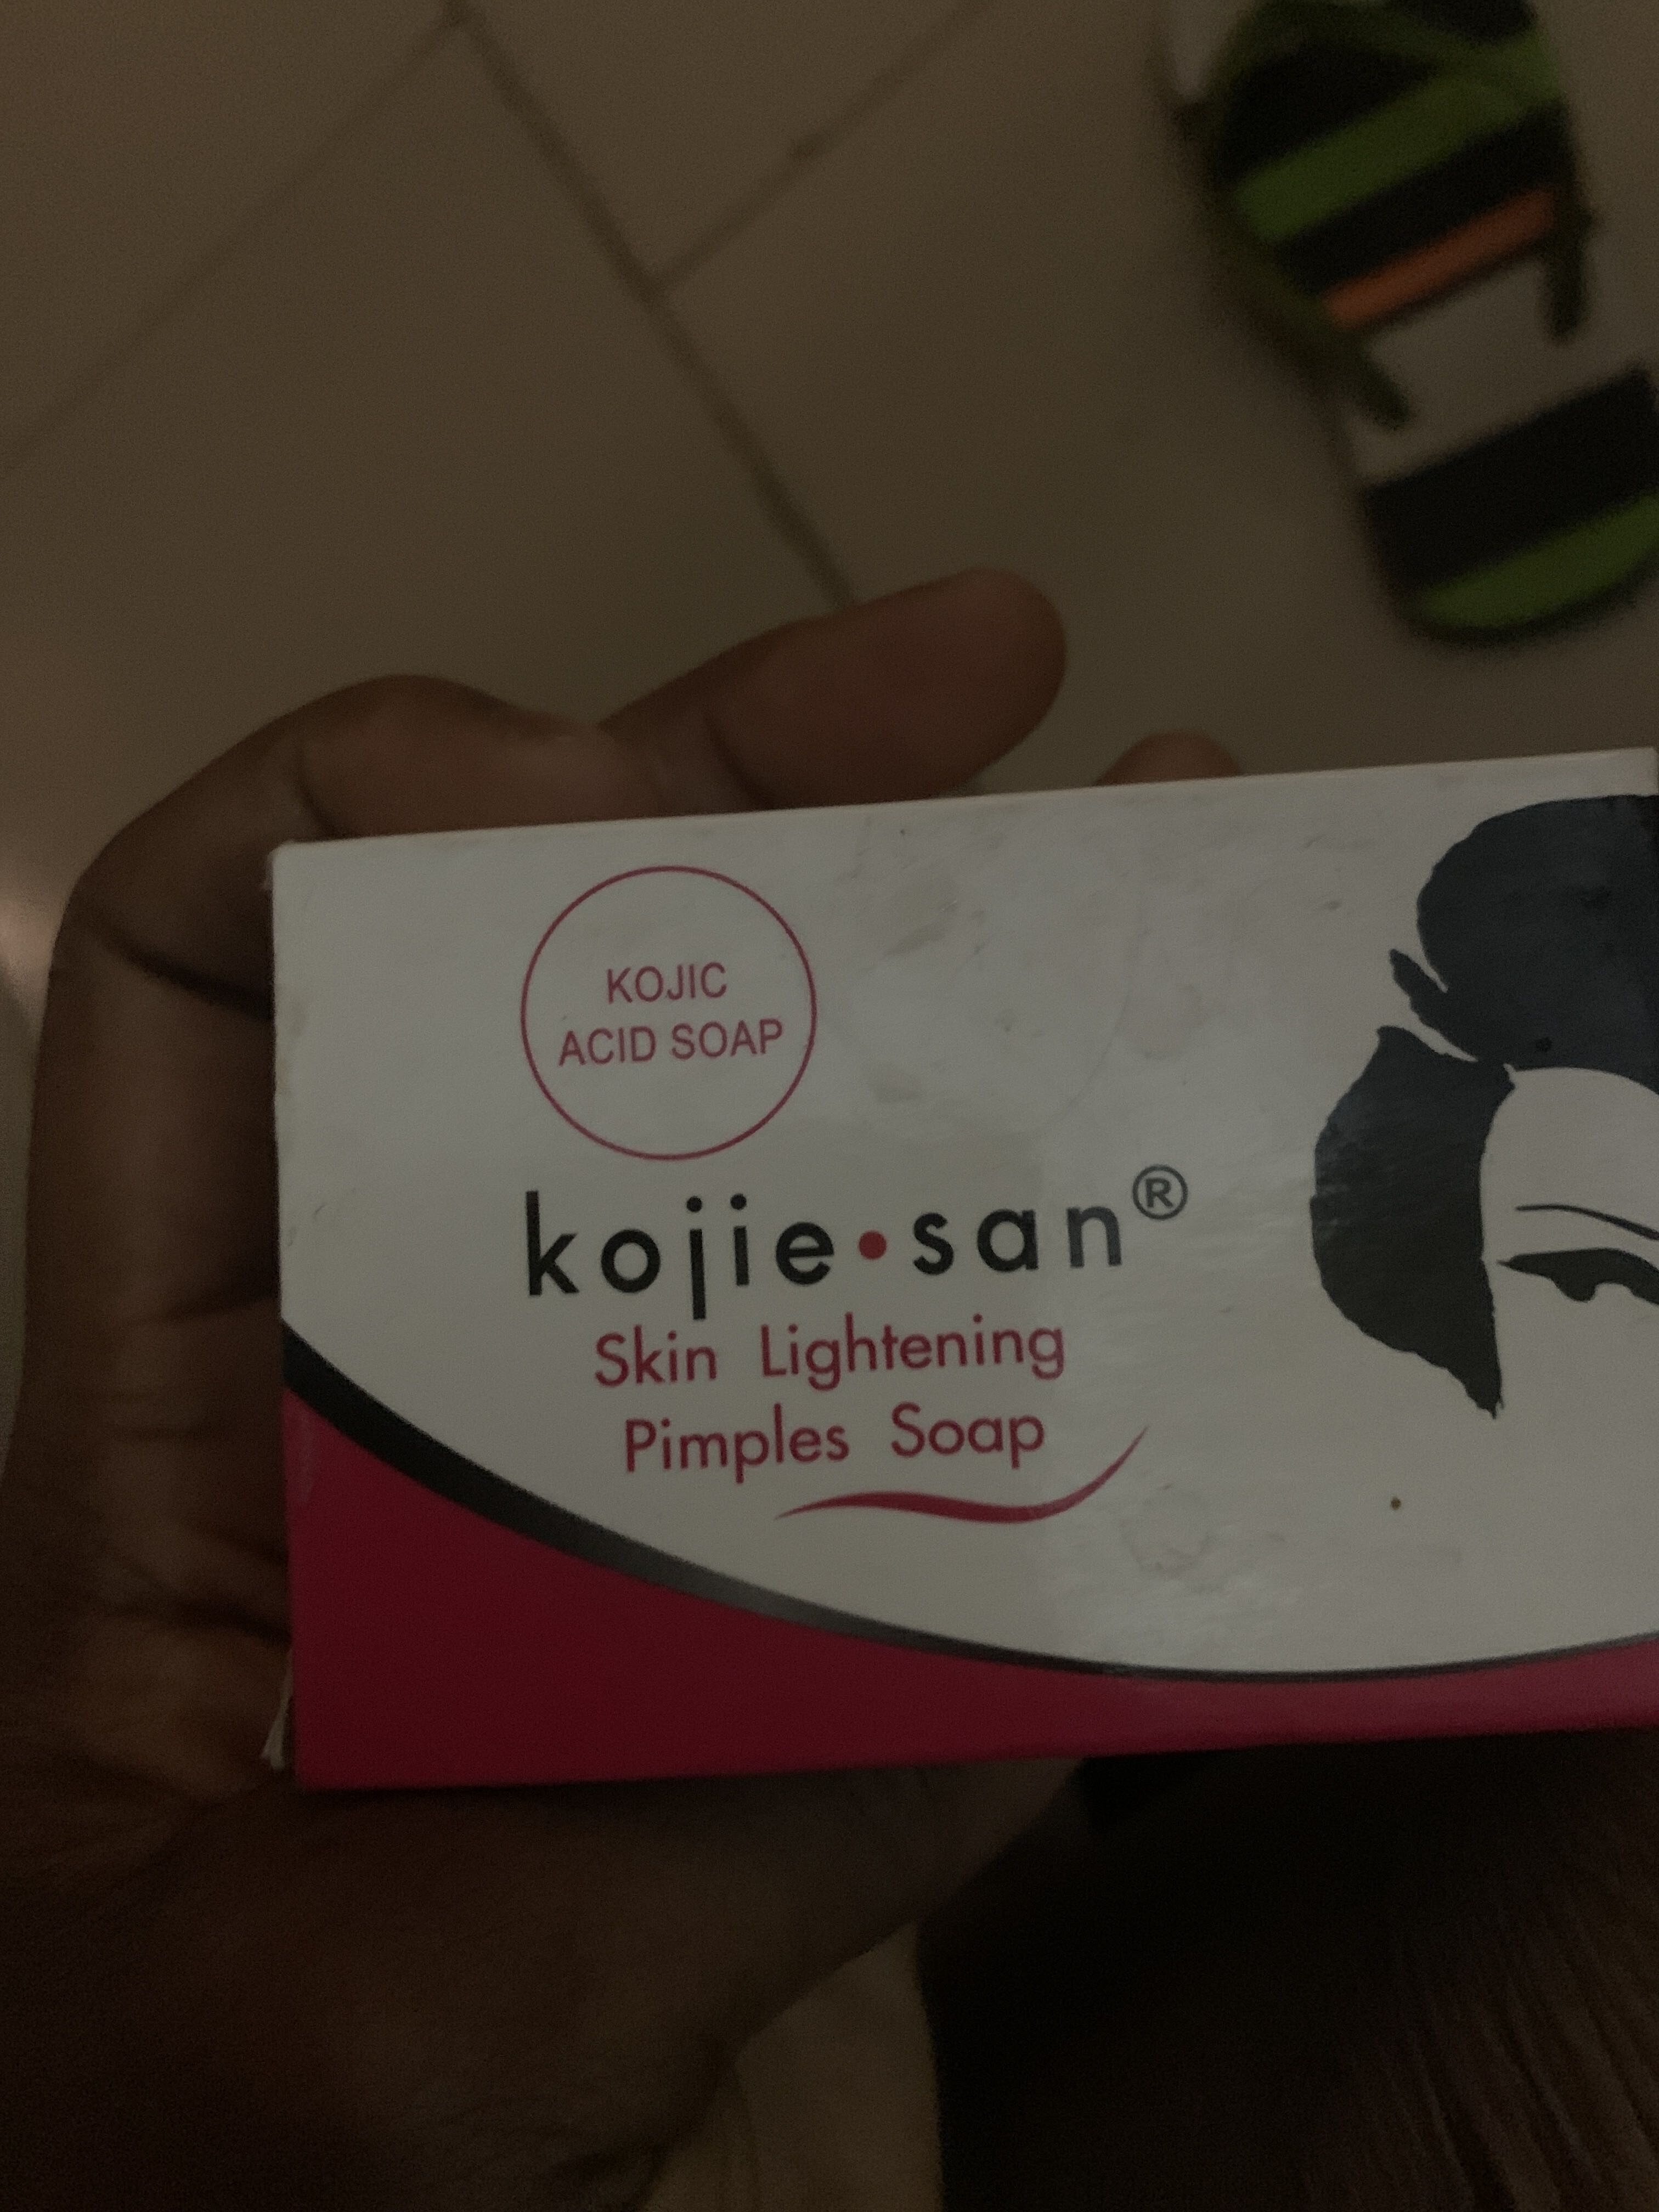 Kojie San skin lightening pimples soap - Product - en